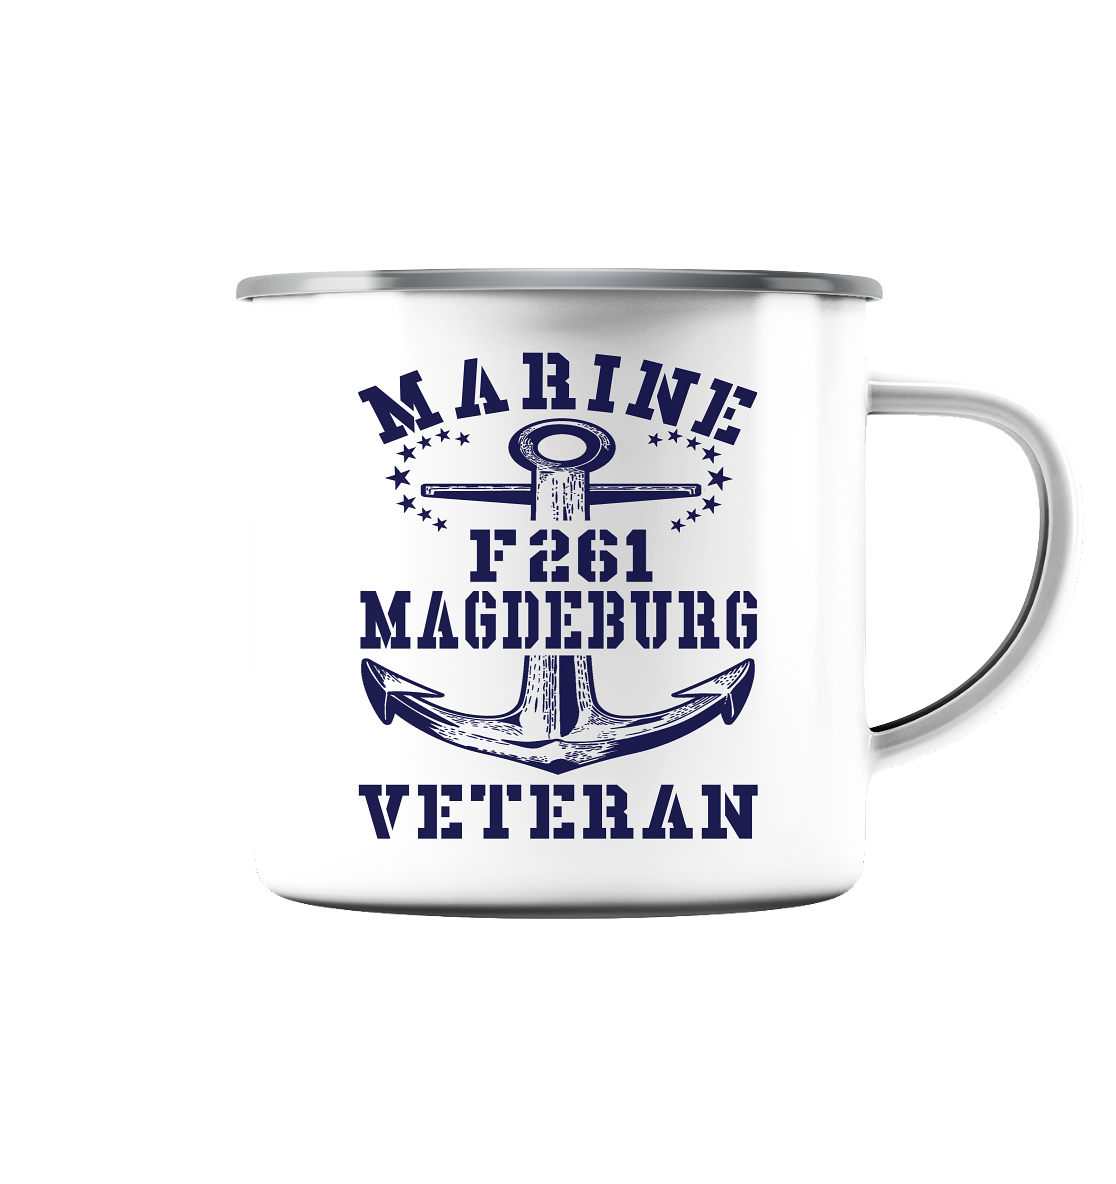 Korvette F261 MAGDEBURG Marine Veteran - Emaille Tasse (Silber)